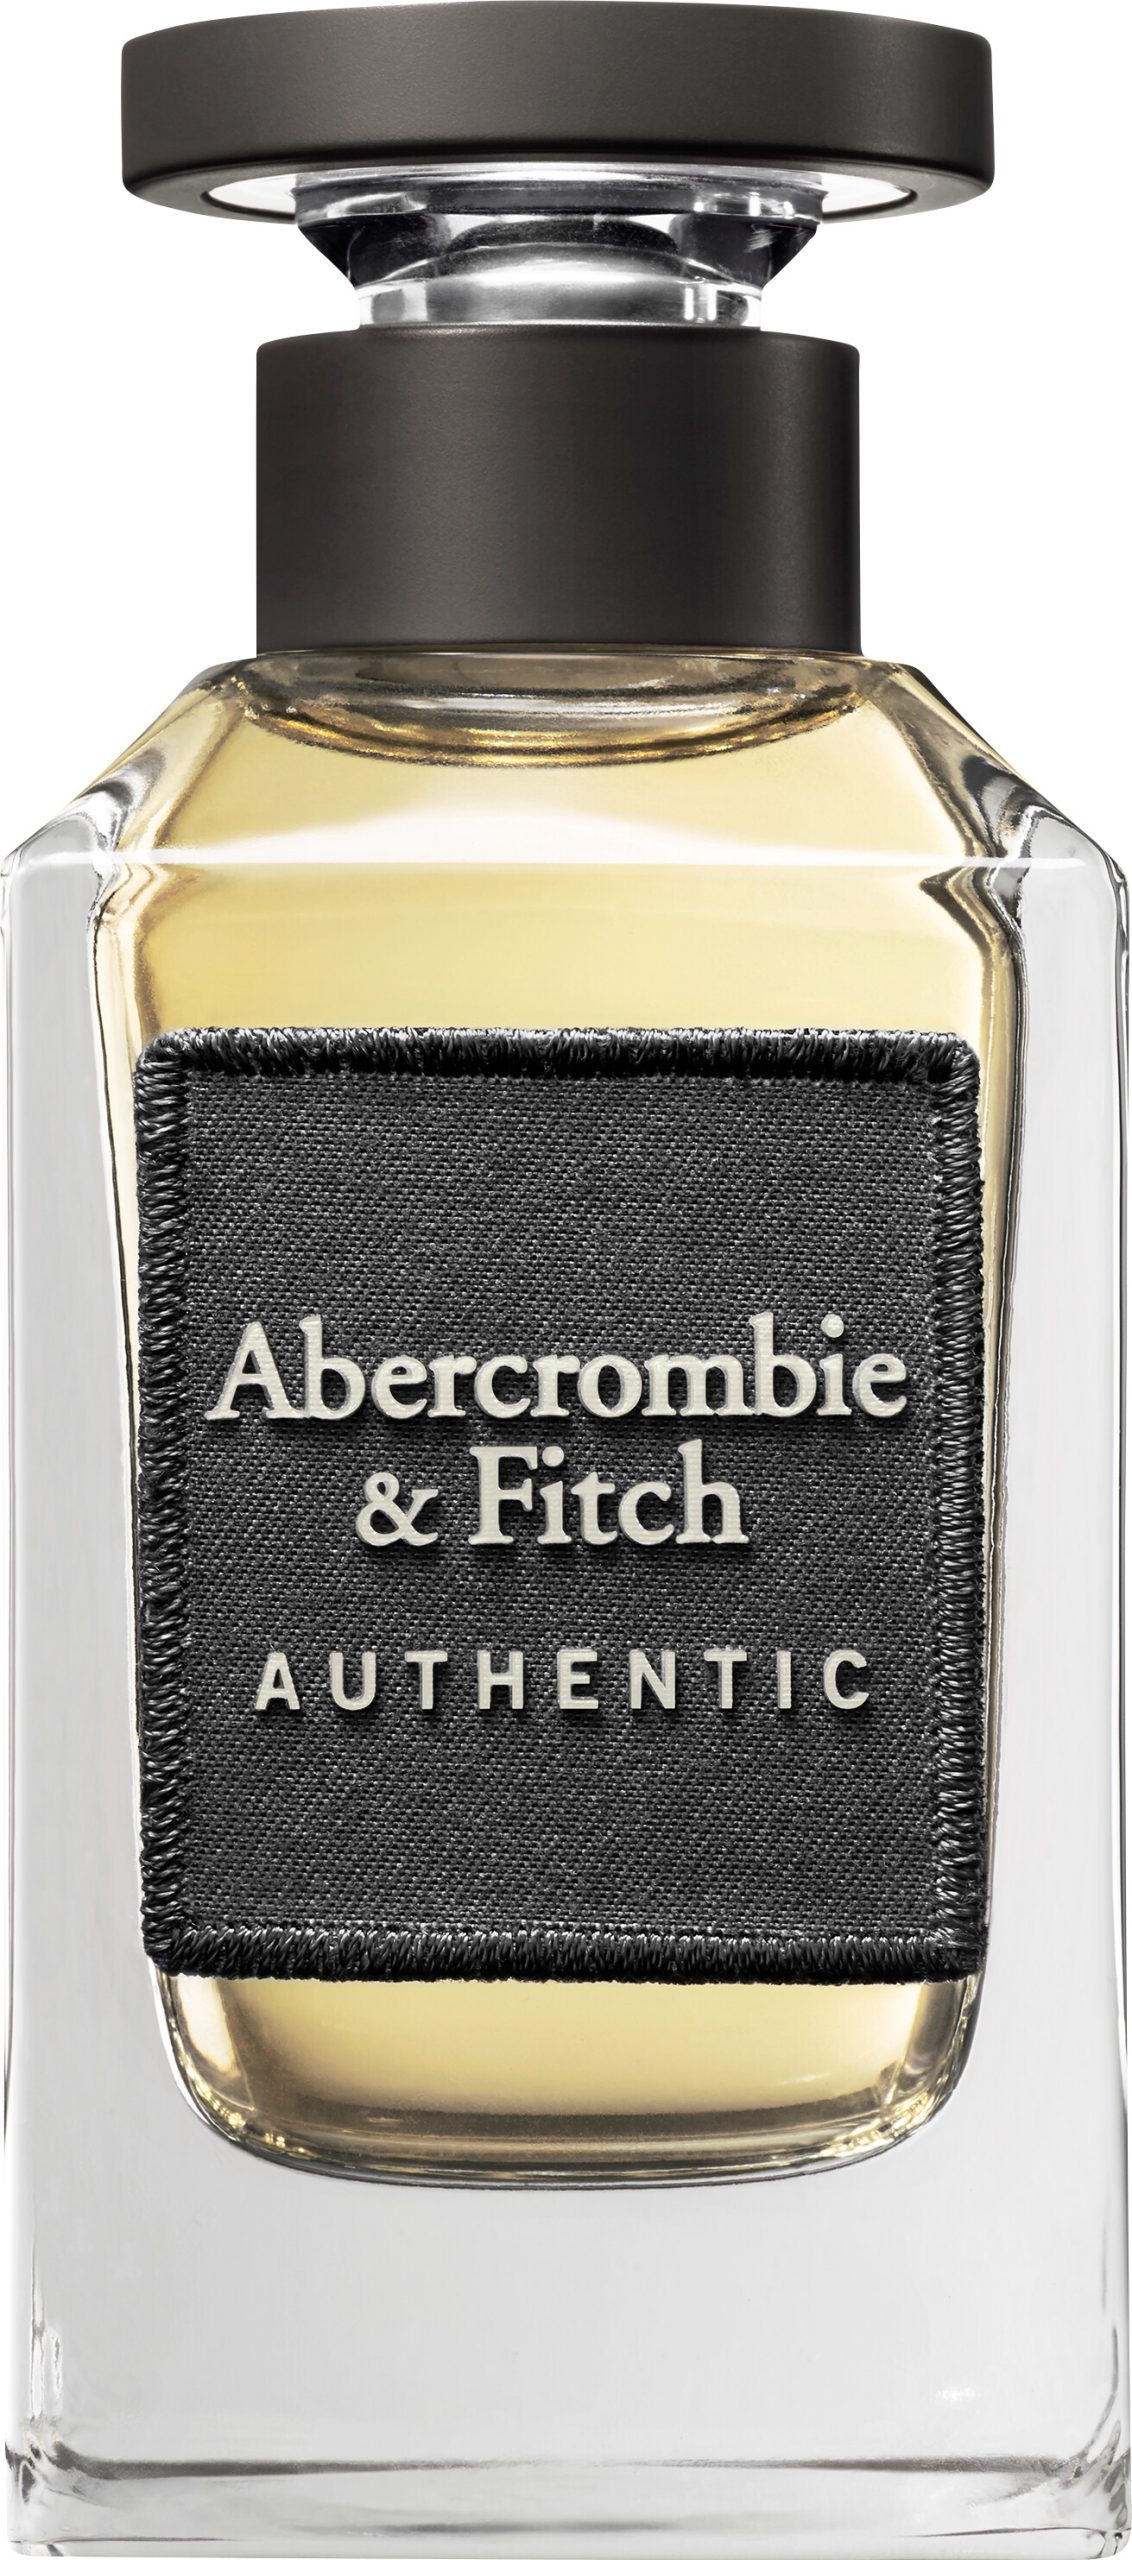 Abercrombie & Fitch Authentic For Men Eau de Toilette